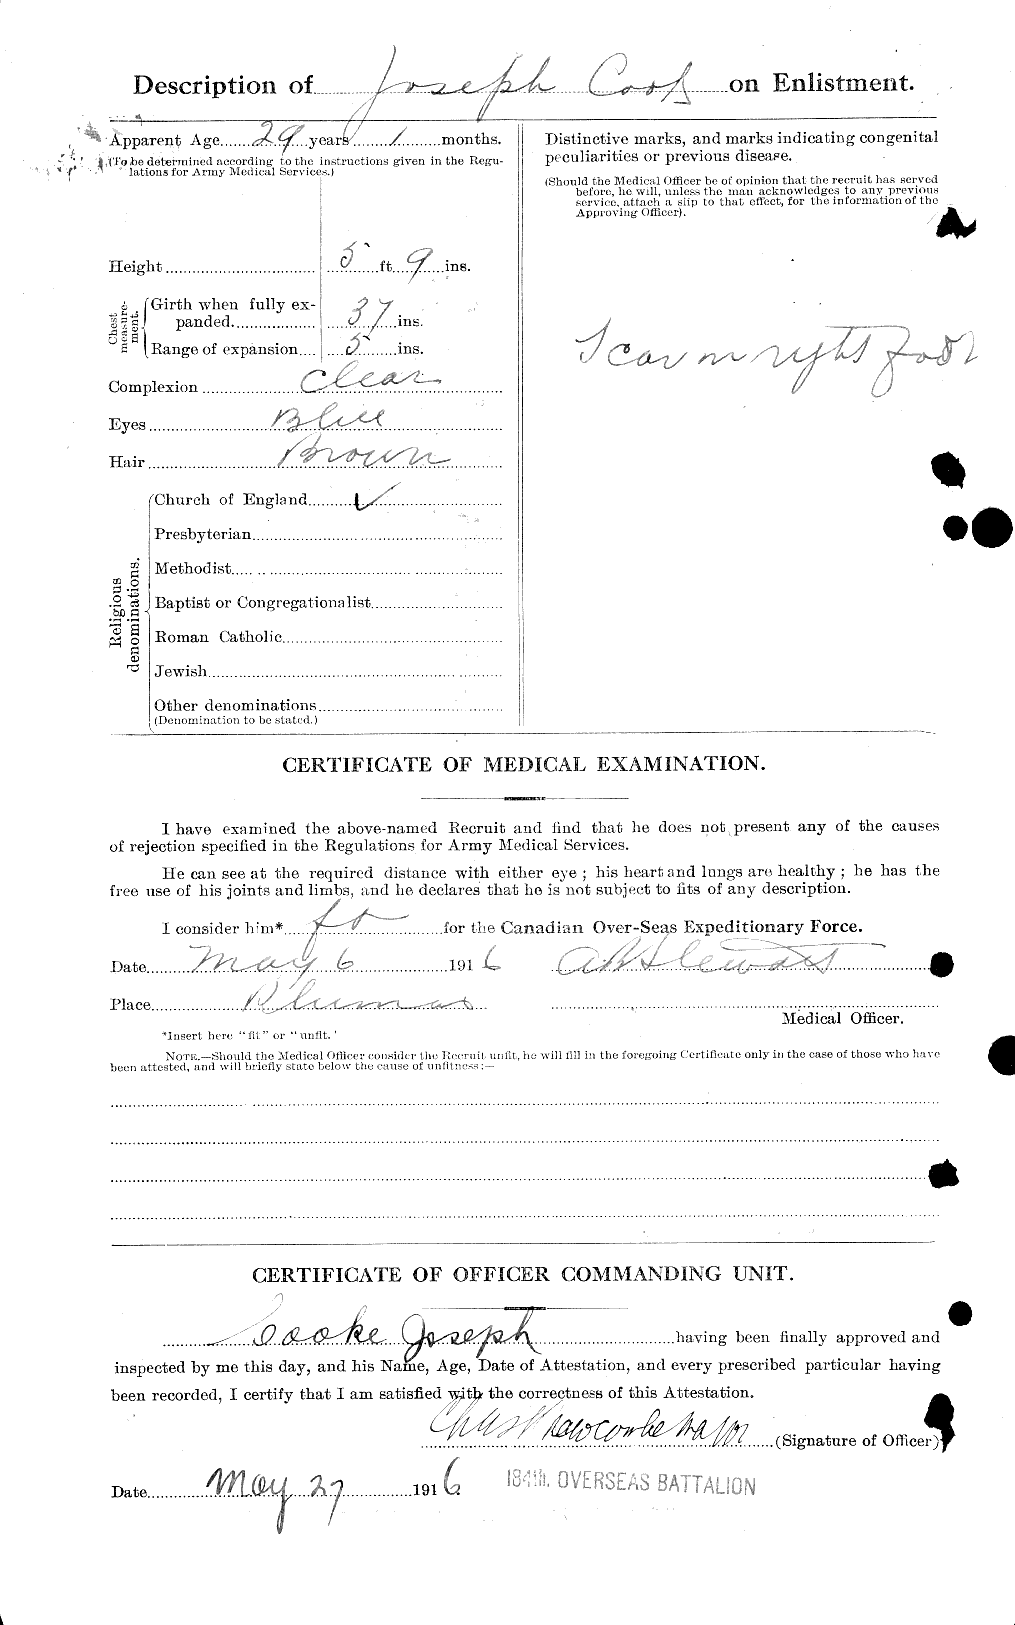 Dossiers du Personnel de la Première Guerre mondiale - CEC 048928b